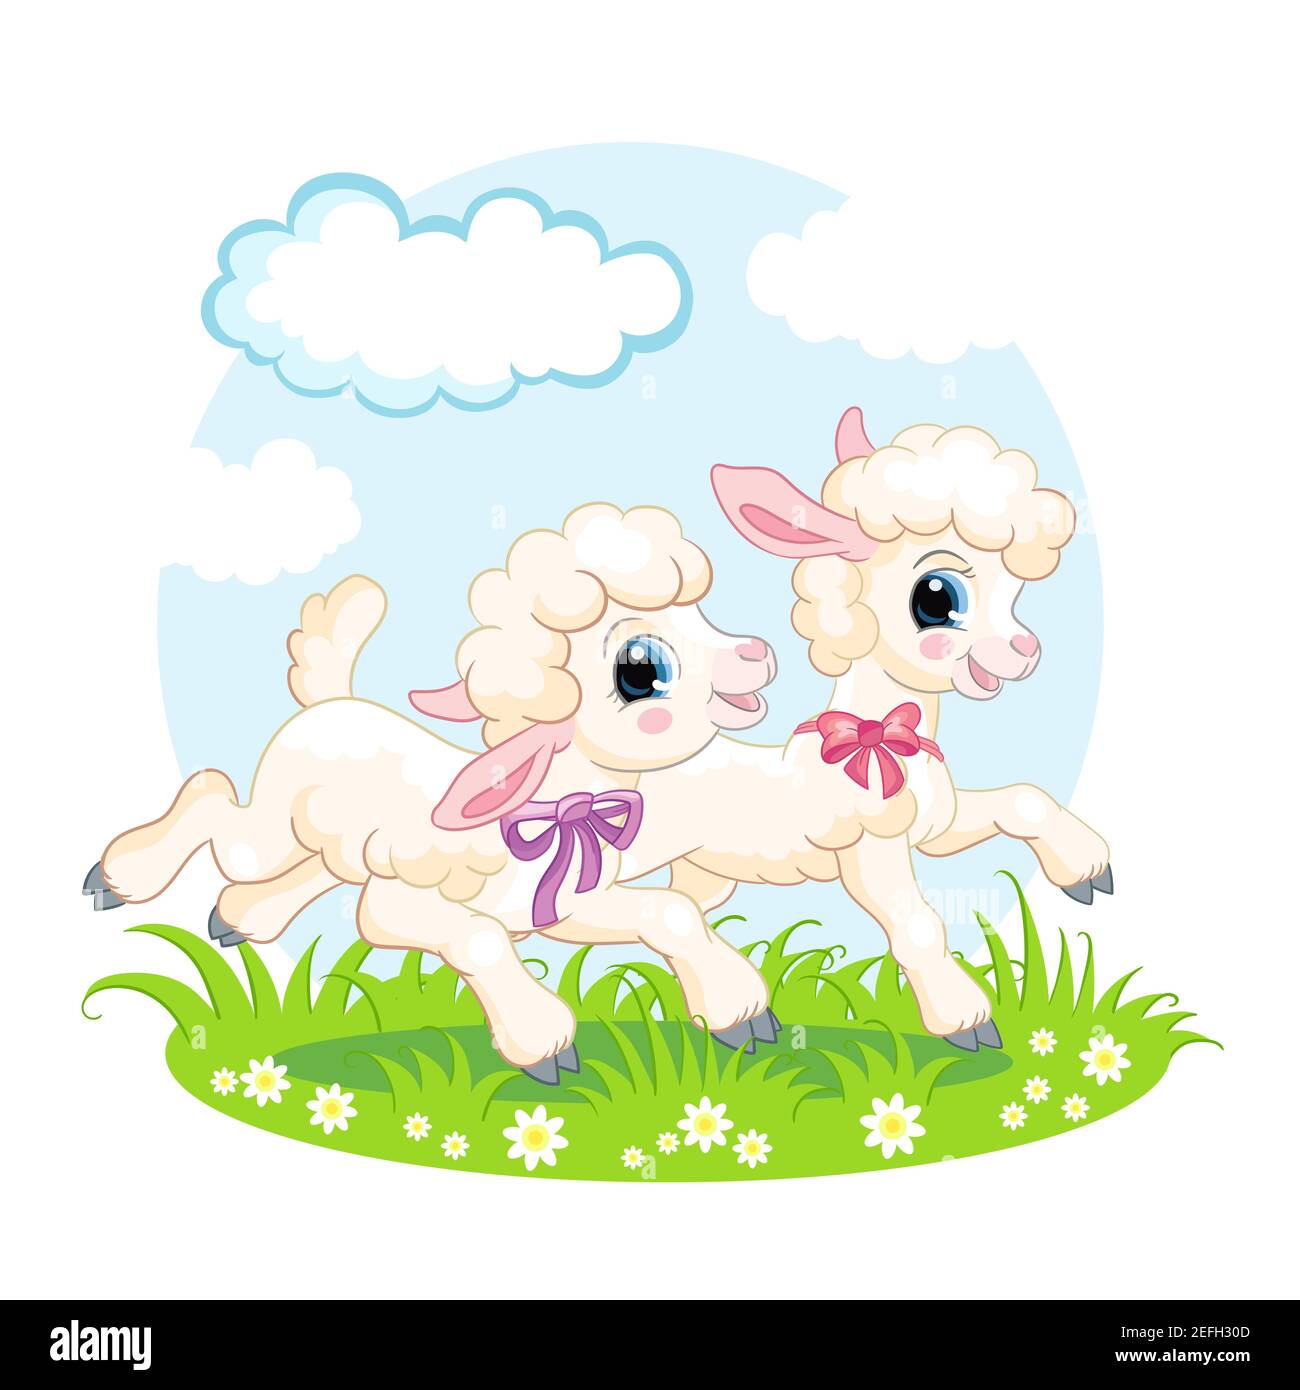 Carino cartoon personaggi due agnelli che corrono su un prato di fiori. Illustrazione vettoriale isolata. Per cartoline, poster, design per vivai, biglietti d'auguri, stic Illustrazione Vettoriale